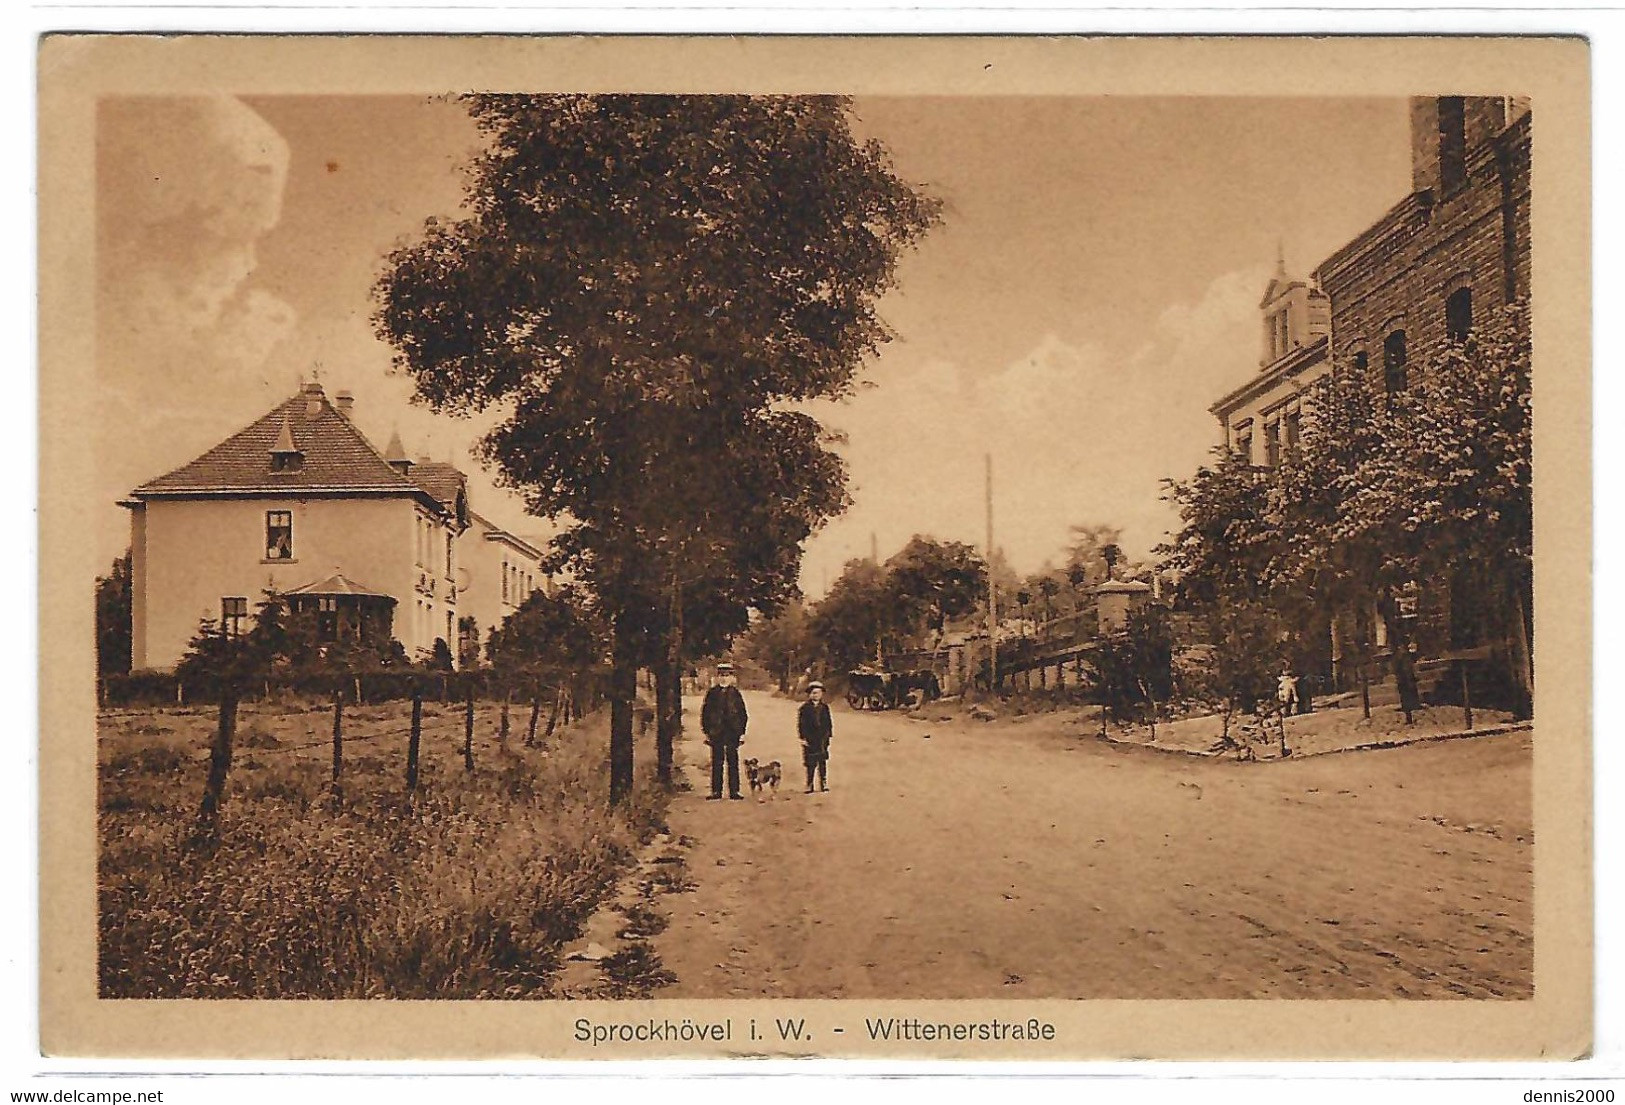 SPROCKHOEVEL I. W. - Witternerstrasse - Ed. Rud. Steinbeck - Sprockhövel